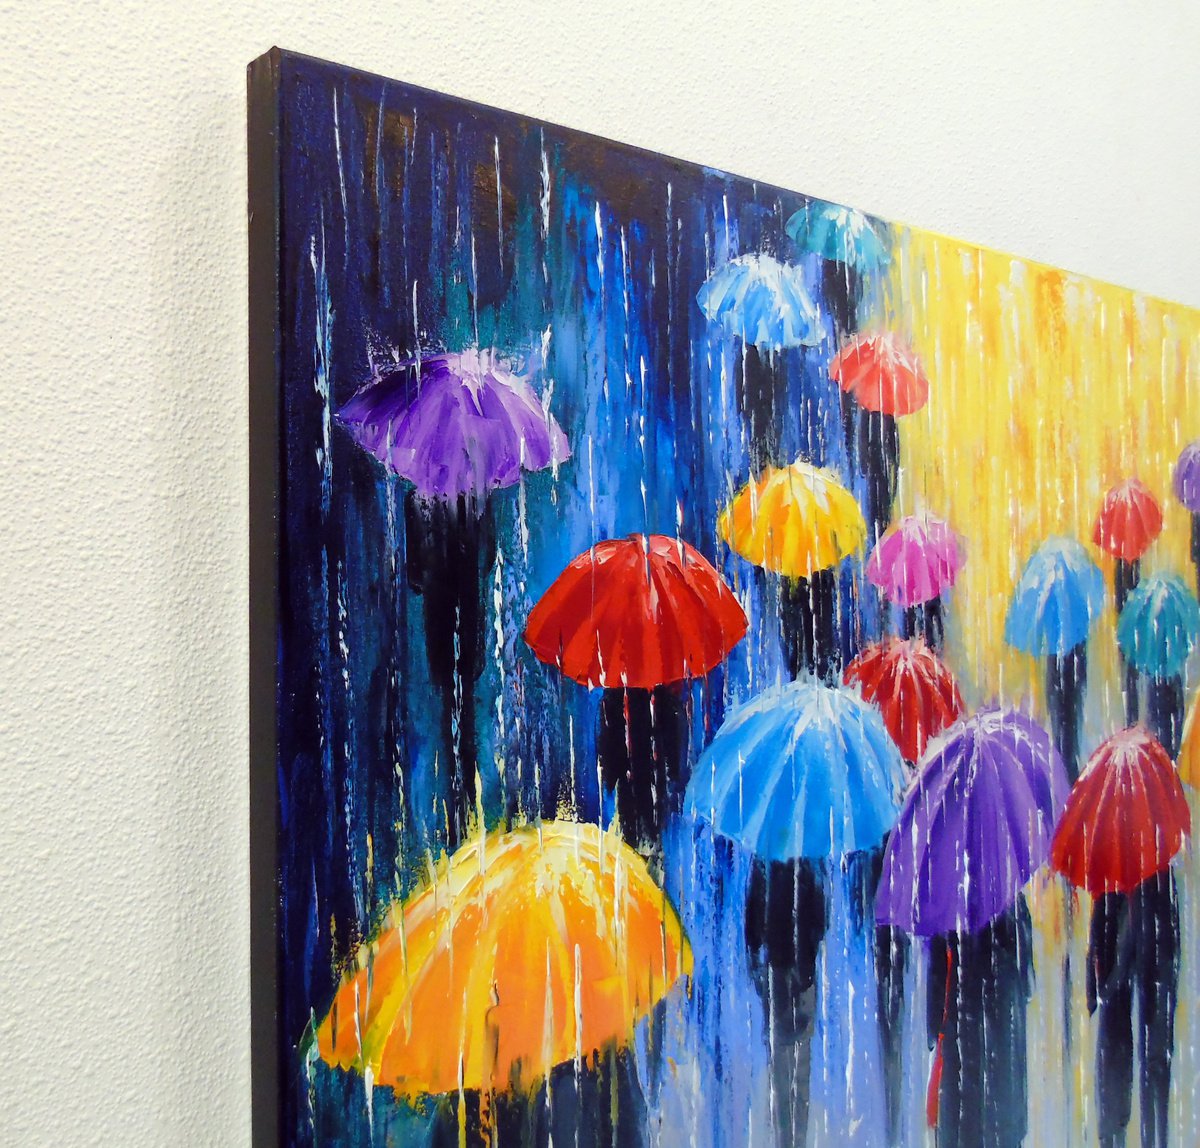 colorful umbrellas in the rain